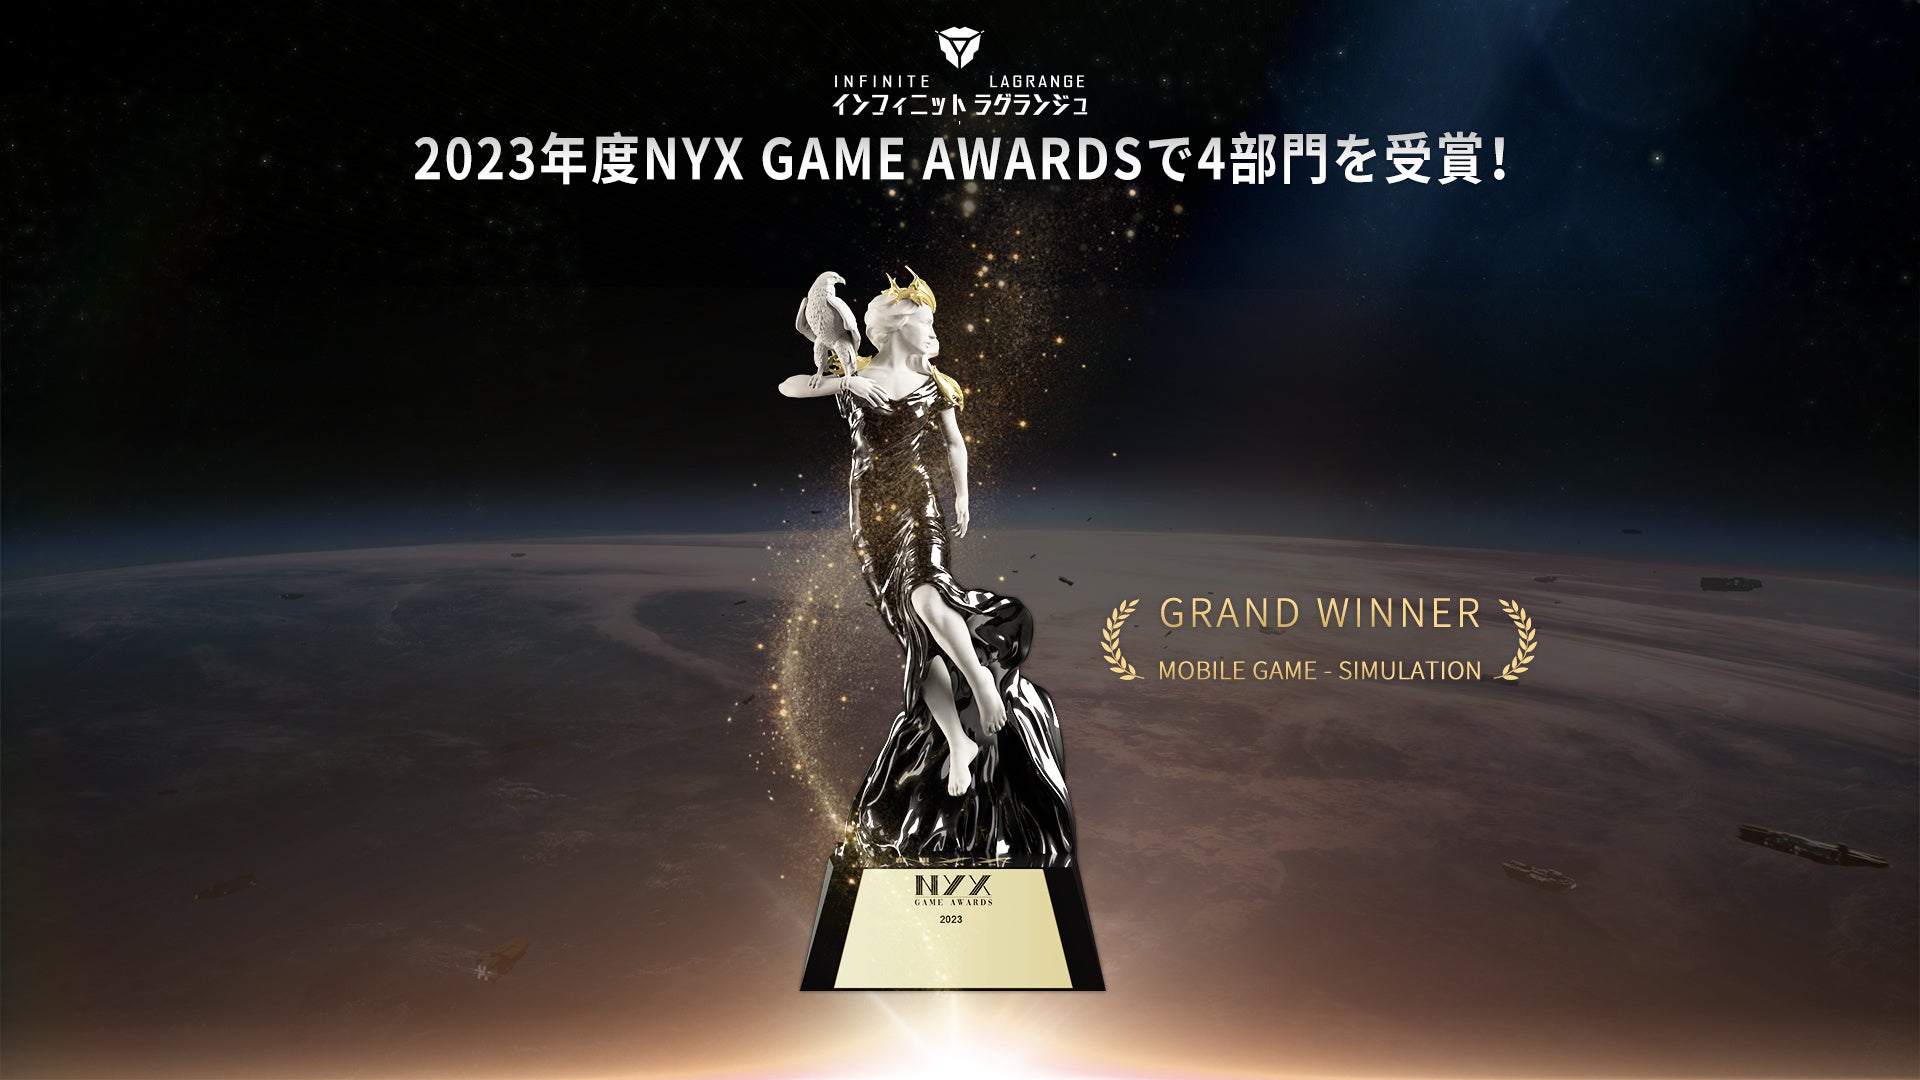 NetEase Gamesが開発を手掛ける『インフィニット・ラグランジュ』が世界トップレベルの賞レース「NYX Game Awards」で4つの大賞を獲得